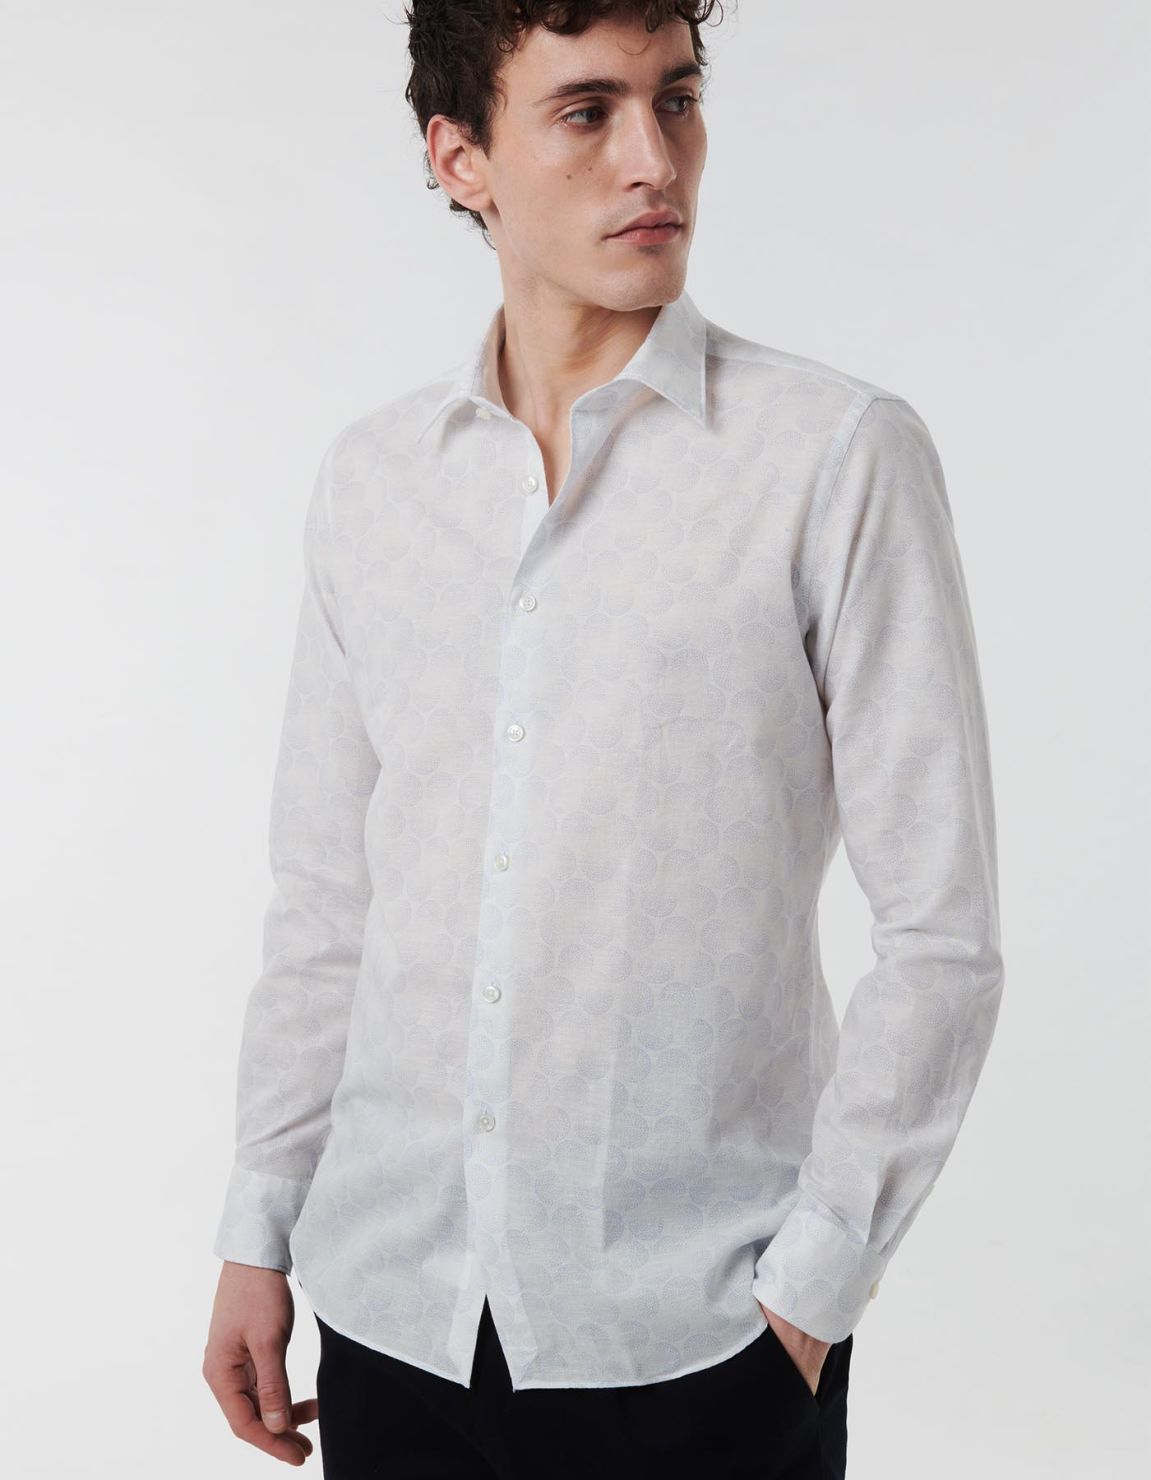 Light Blue Linen Pattern Shirt Collar spread Tailor Custom Fit 7